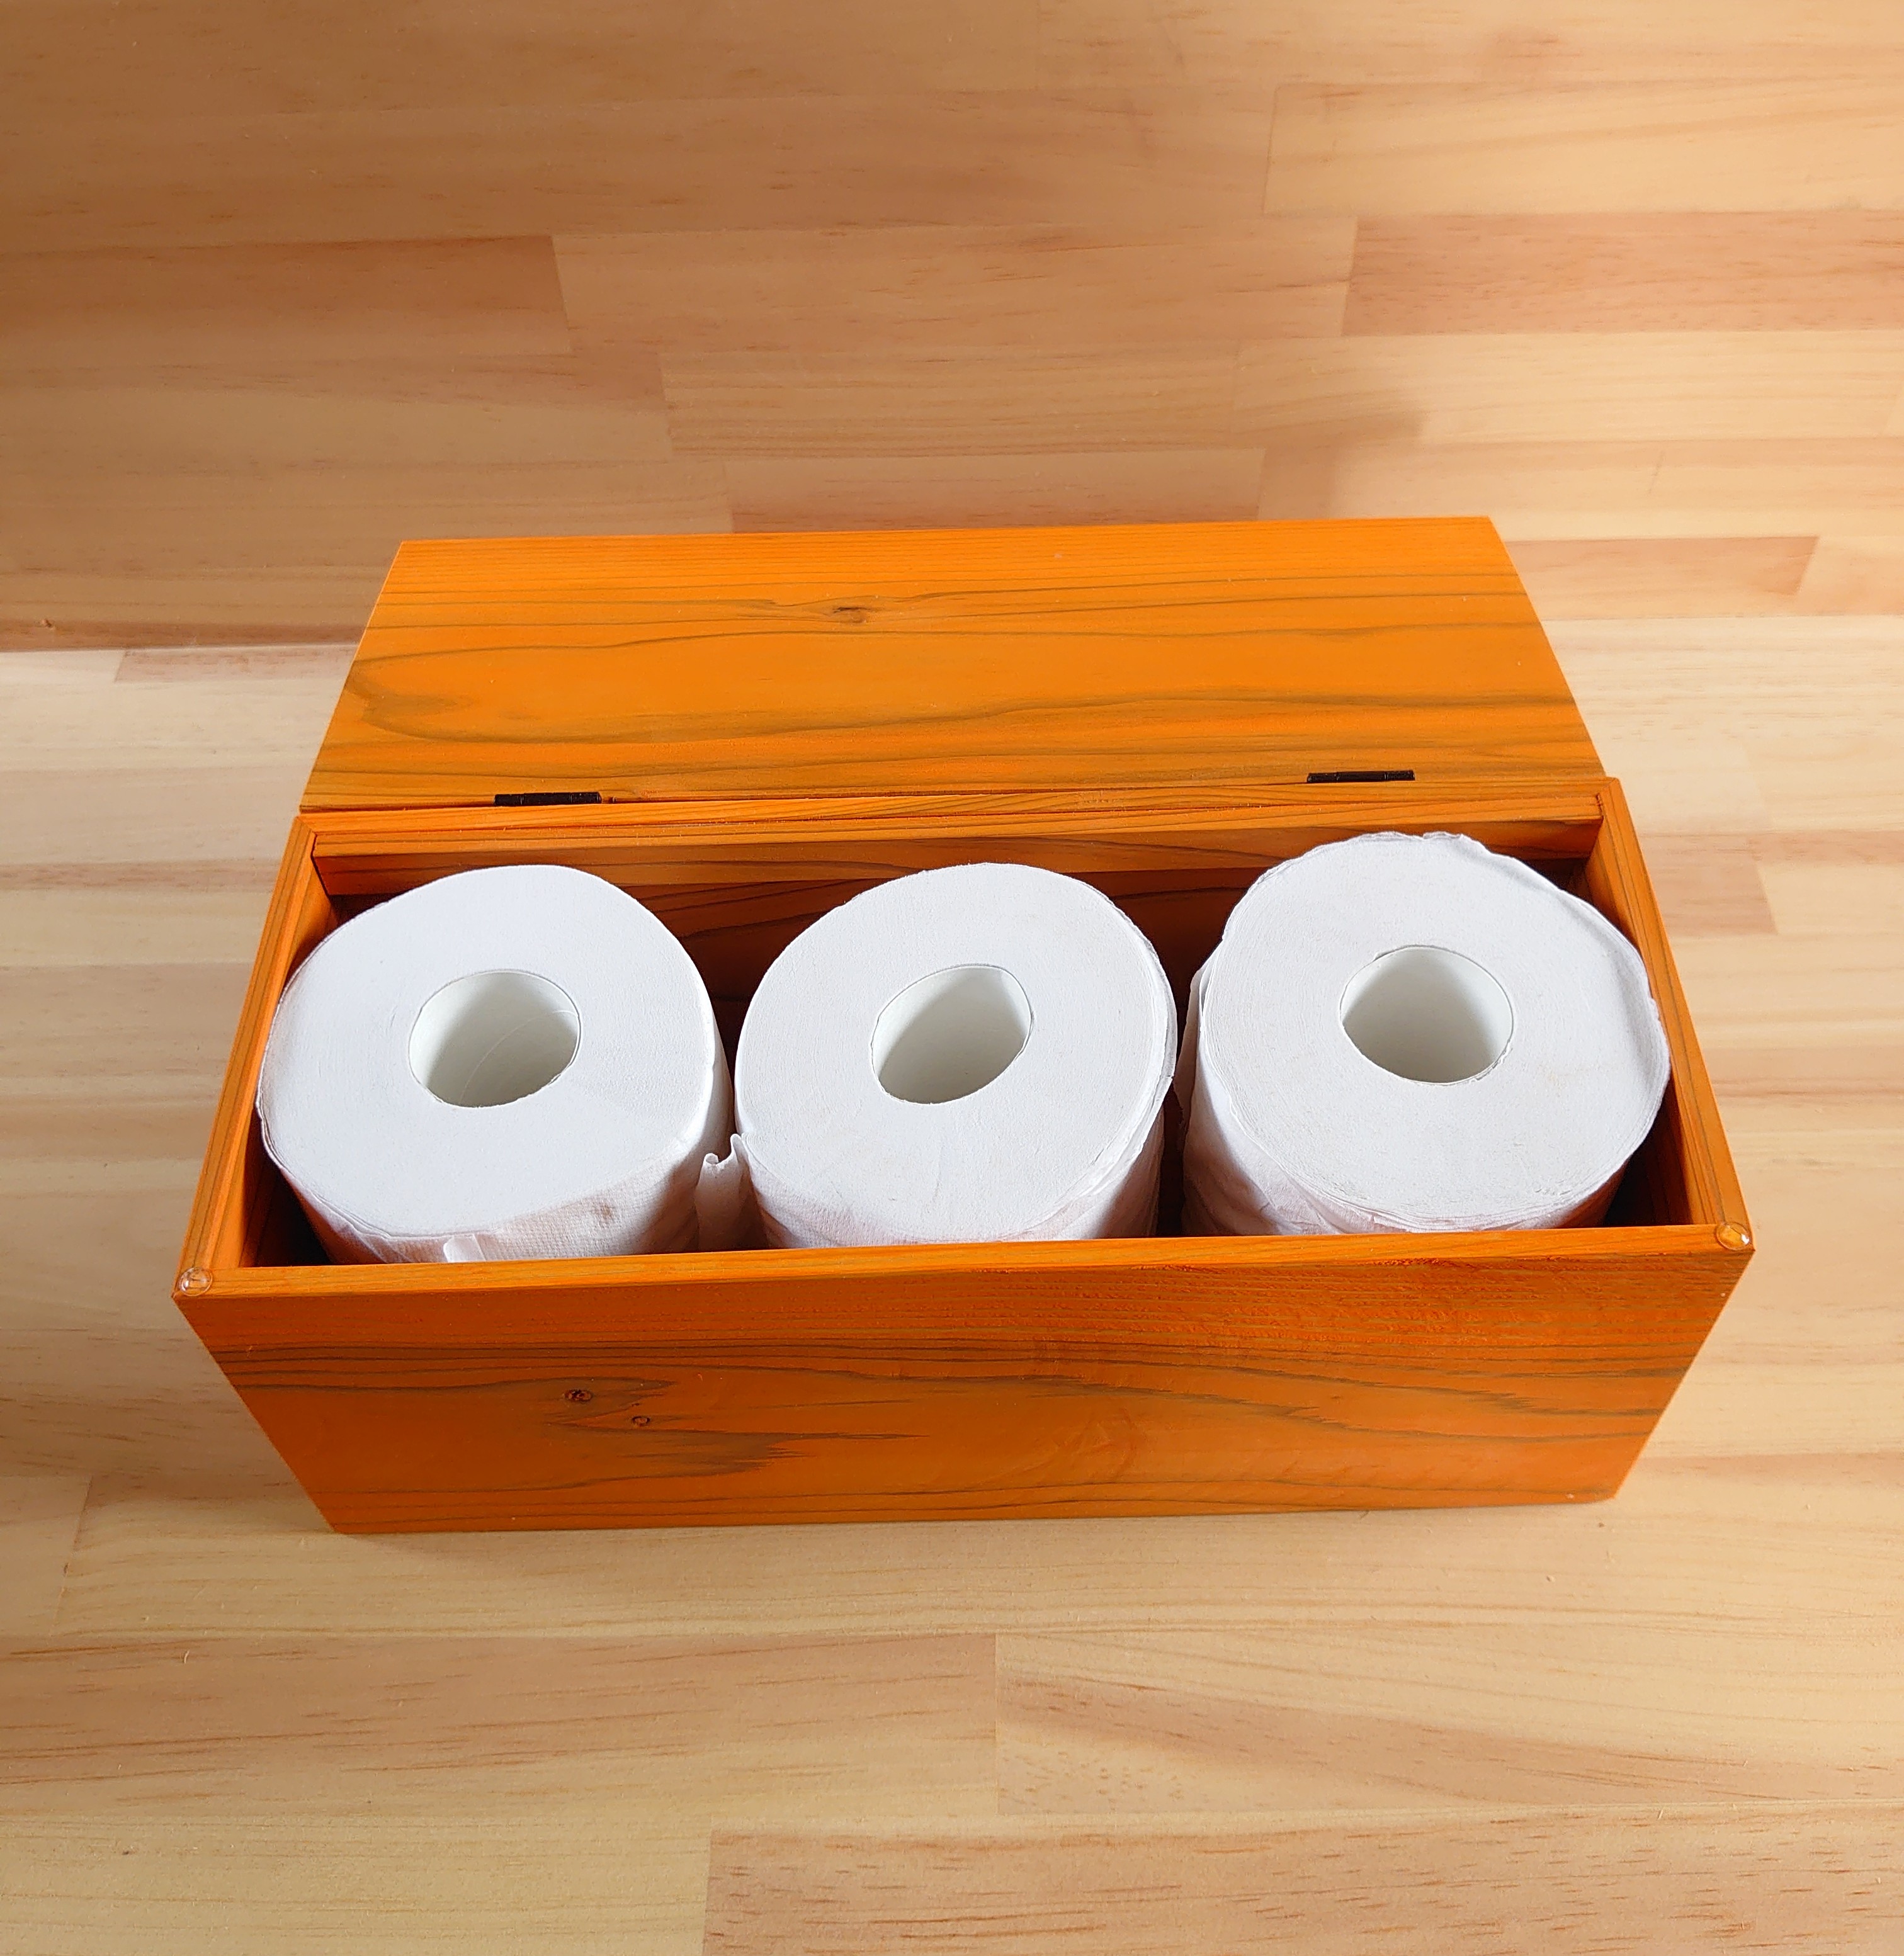 かぼちゃ色のトイレットペーパー収納箱 木製 Iichi ハンドメイド クラフト作品 手仕事品の通販